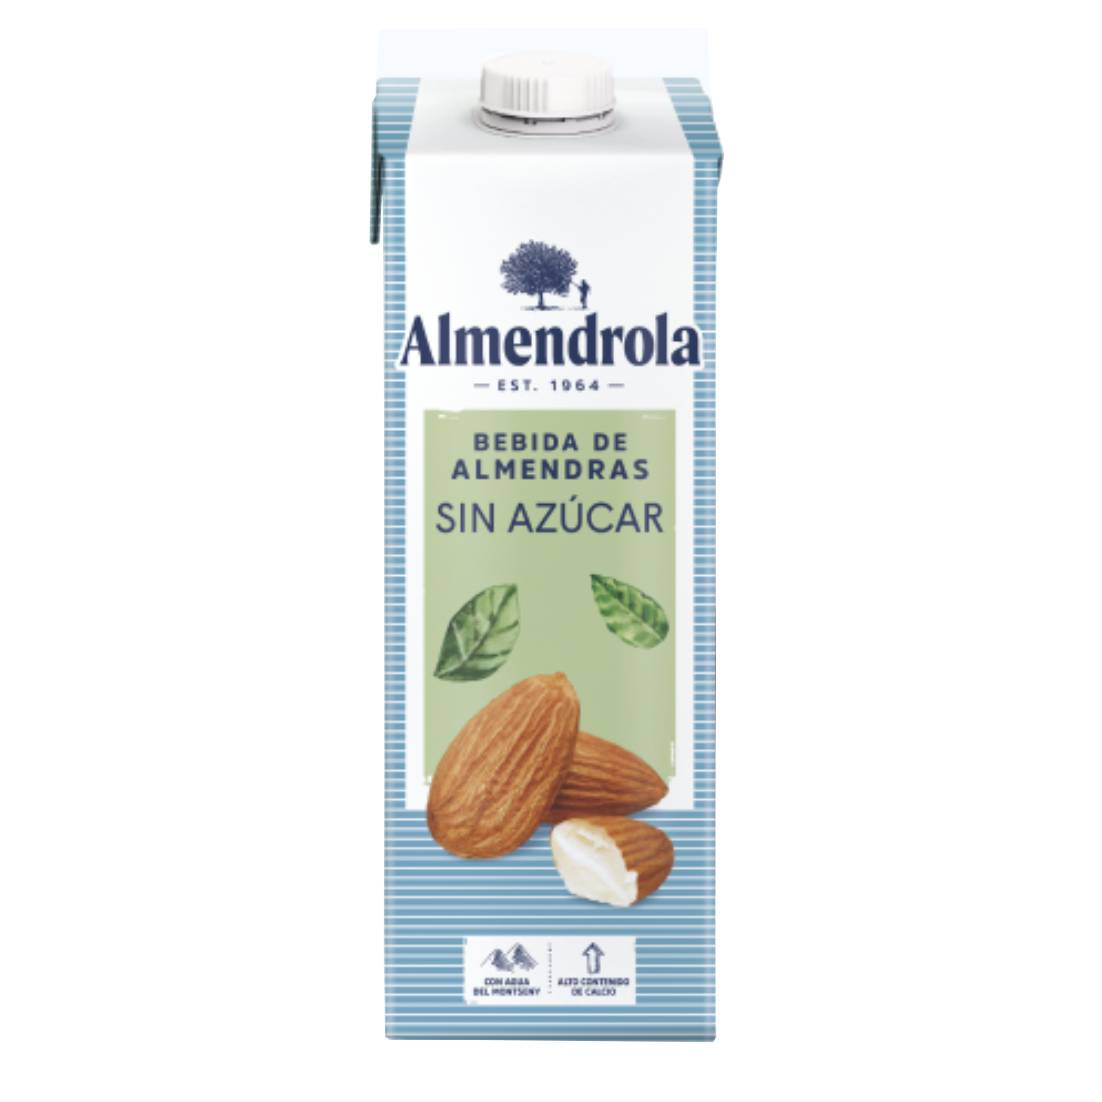 Bebida de Almendras sin azúcar, 1 litro, Marca Almendrola